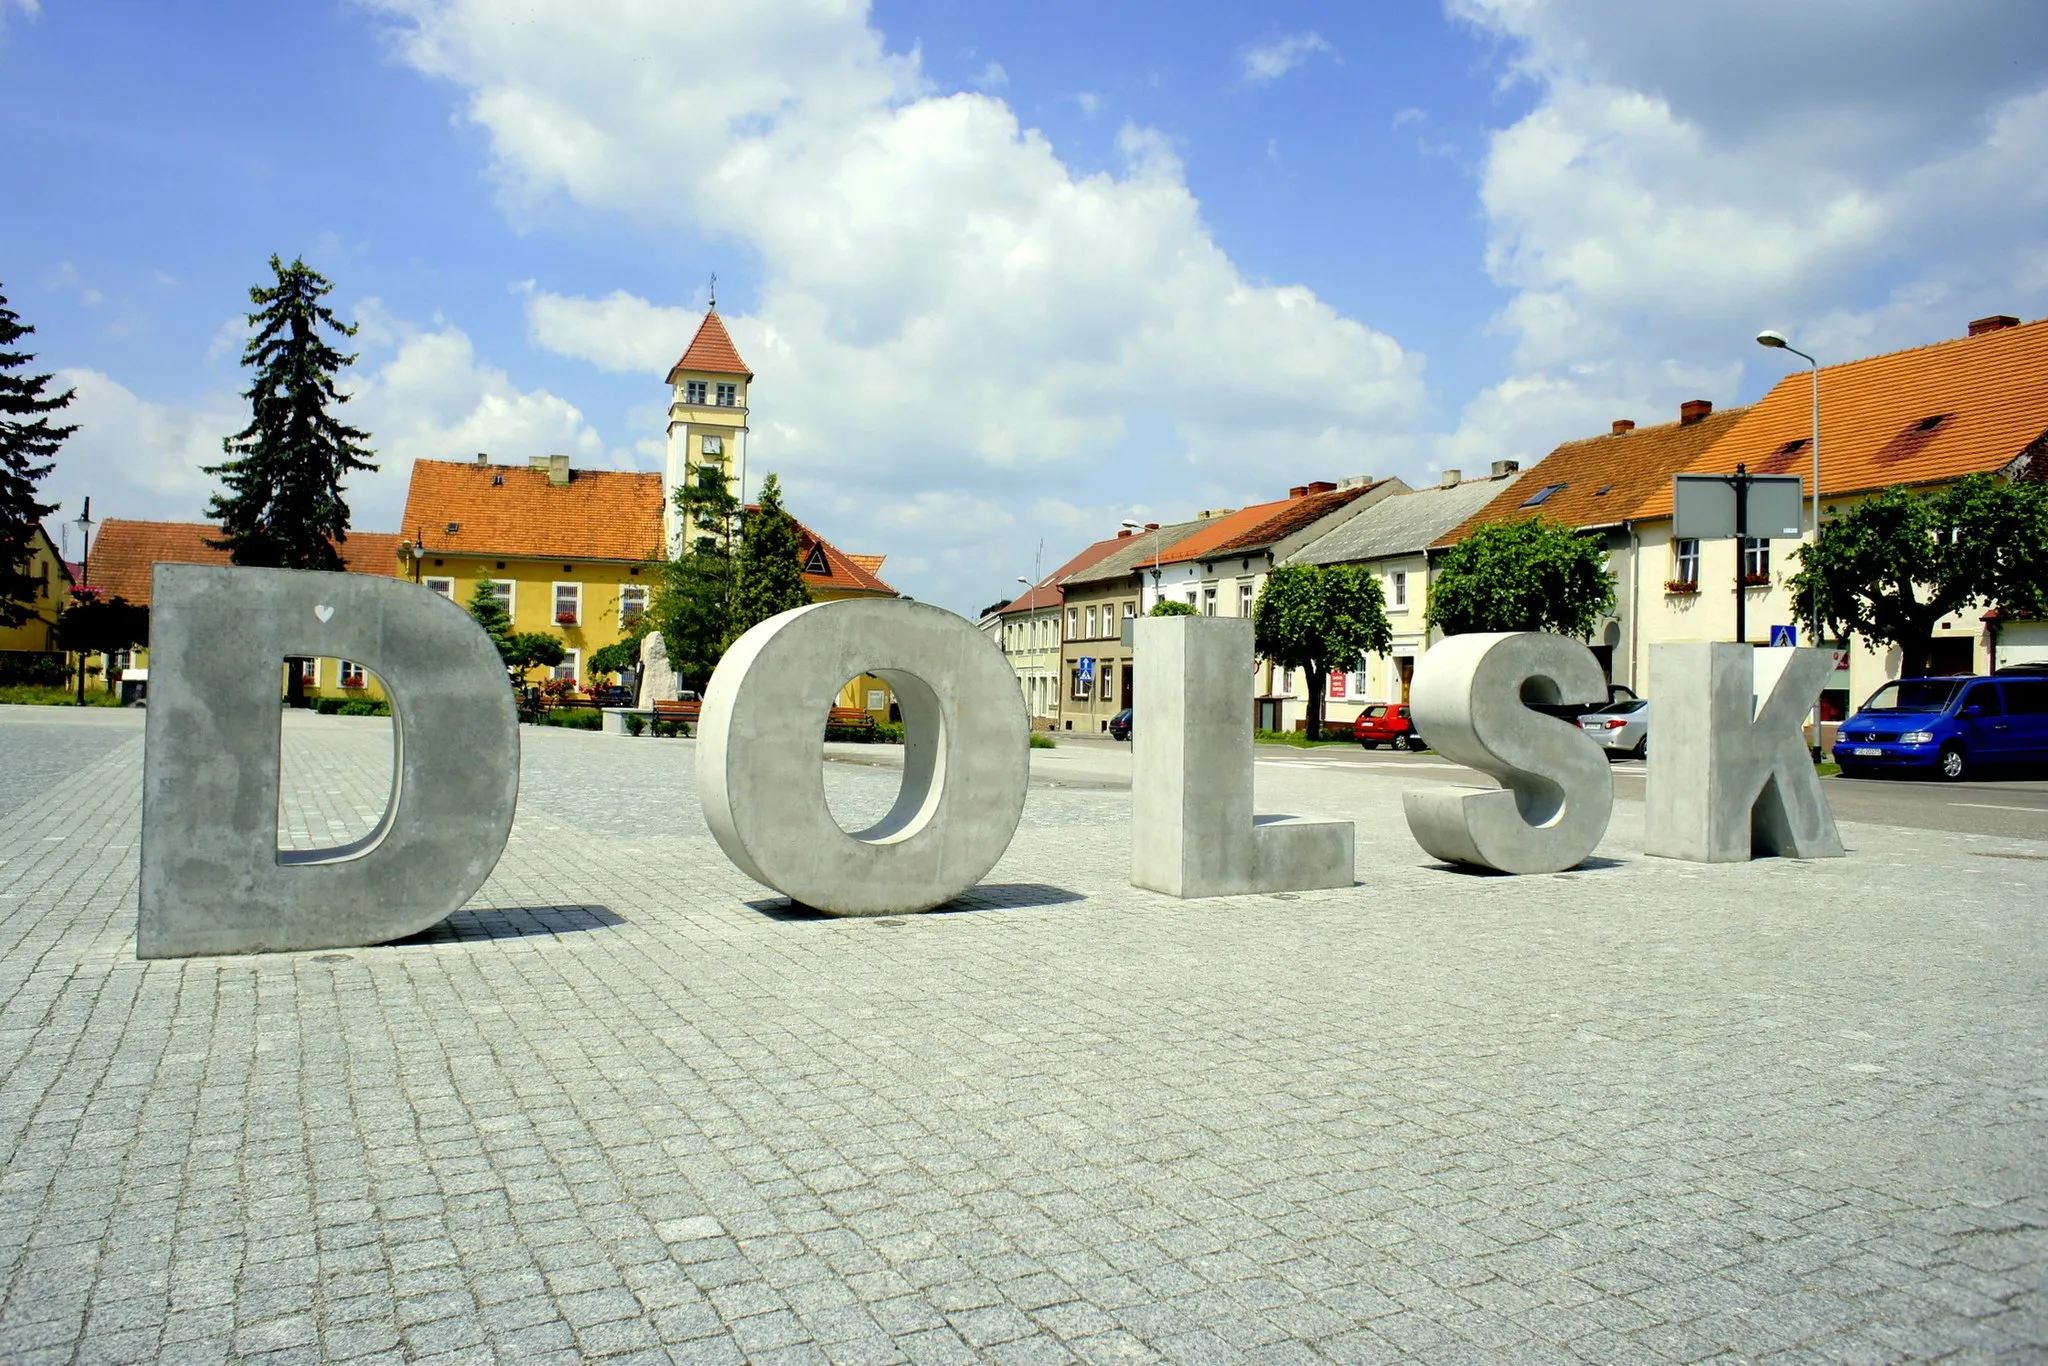 Photo showing: Dolsk, powiat śremski w Wielkopolsce. Rynek i ratusz.